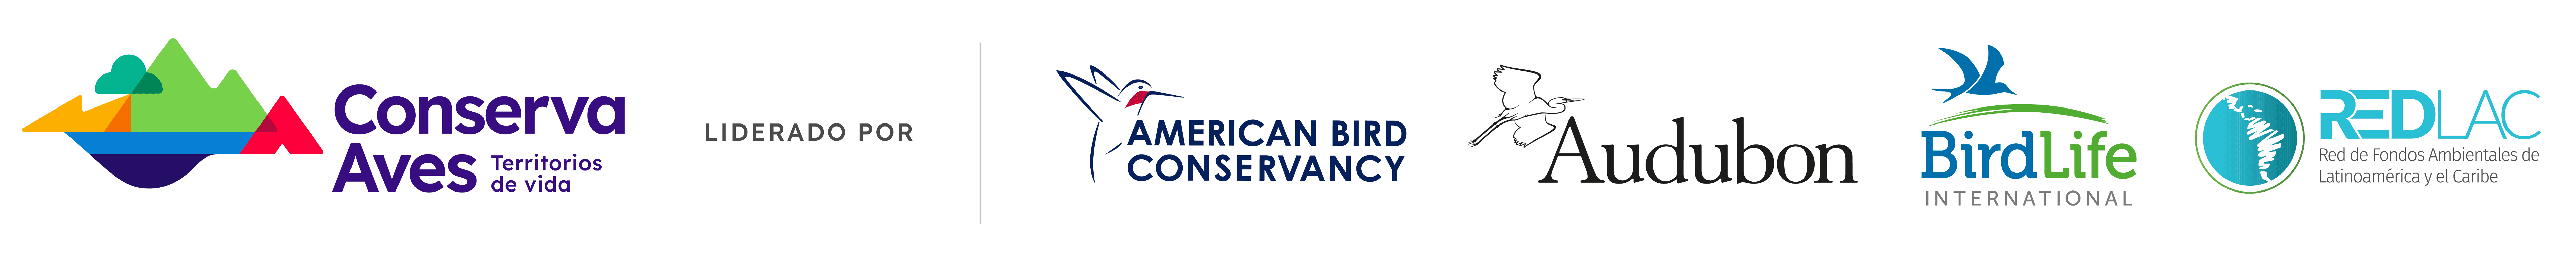 Conserva Aves Banner includes the American Bird Conservancy, Audubon, BirdLife International, & Red de Fondos Ambientales de Latinoamérica y el Caribe